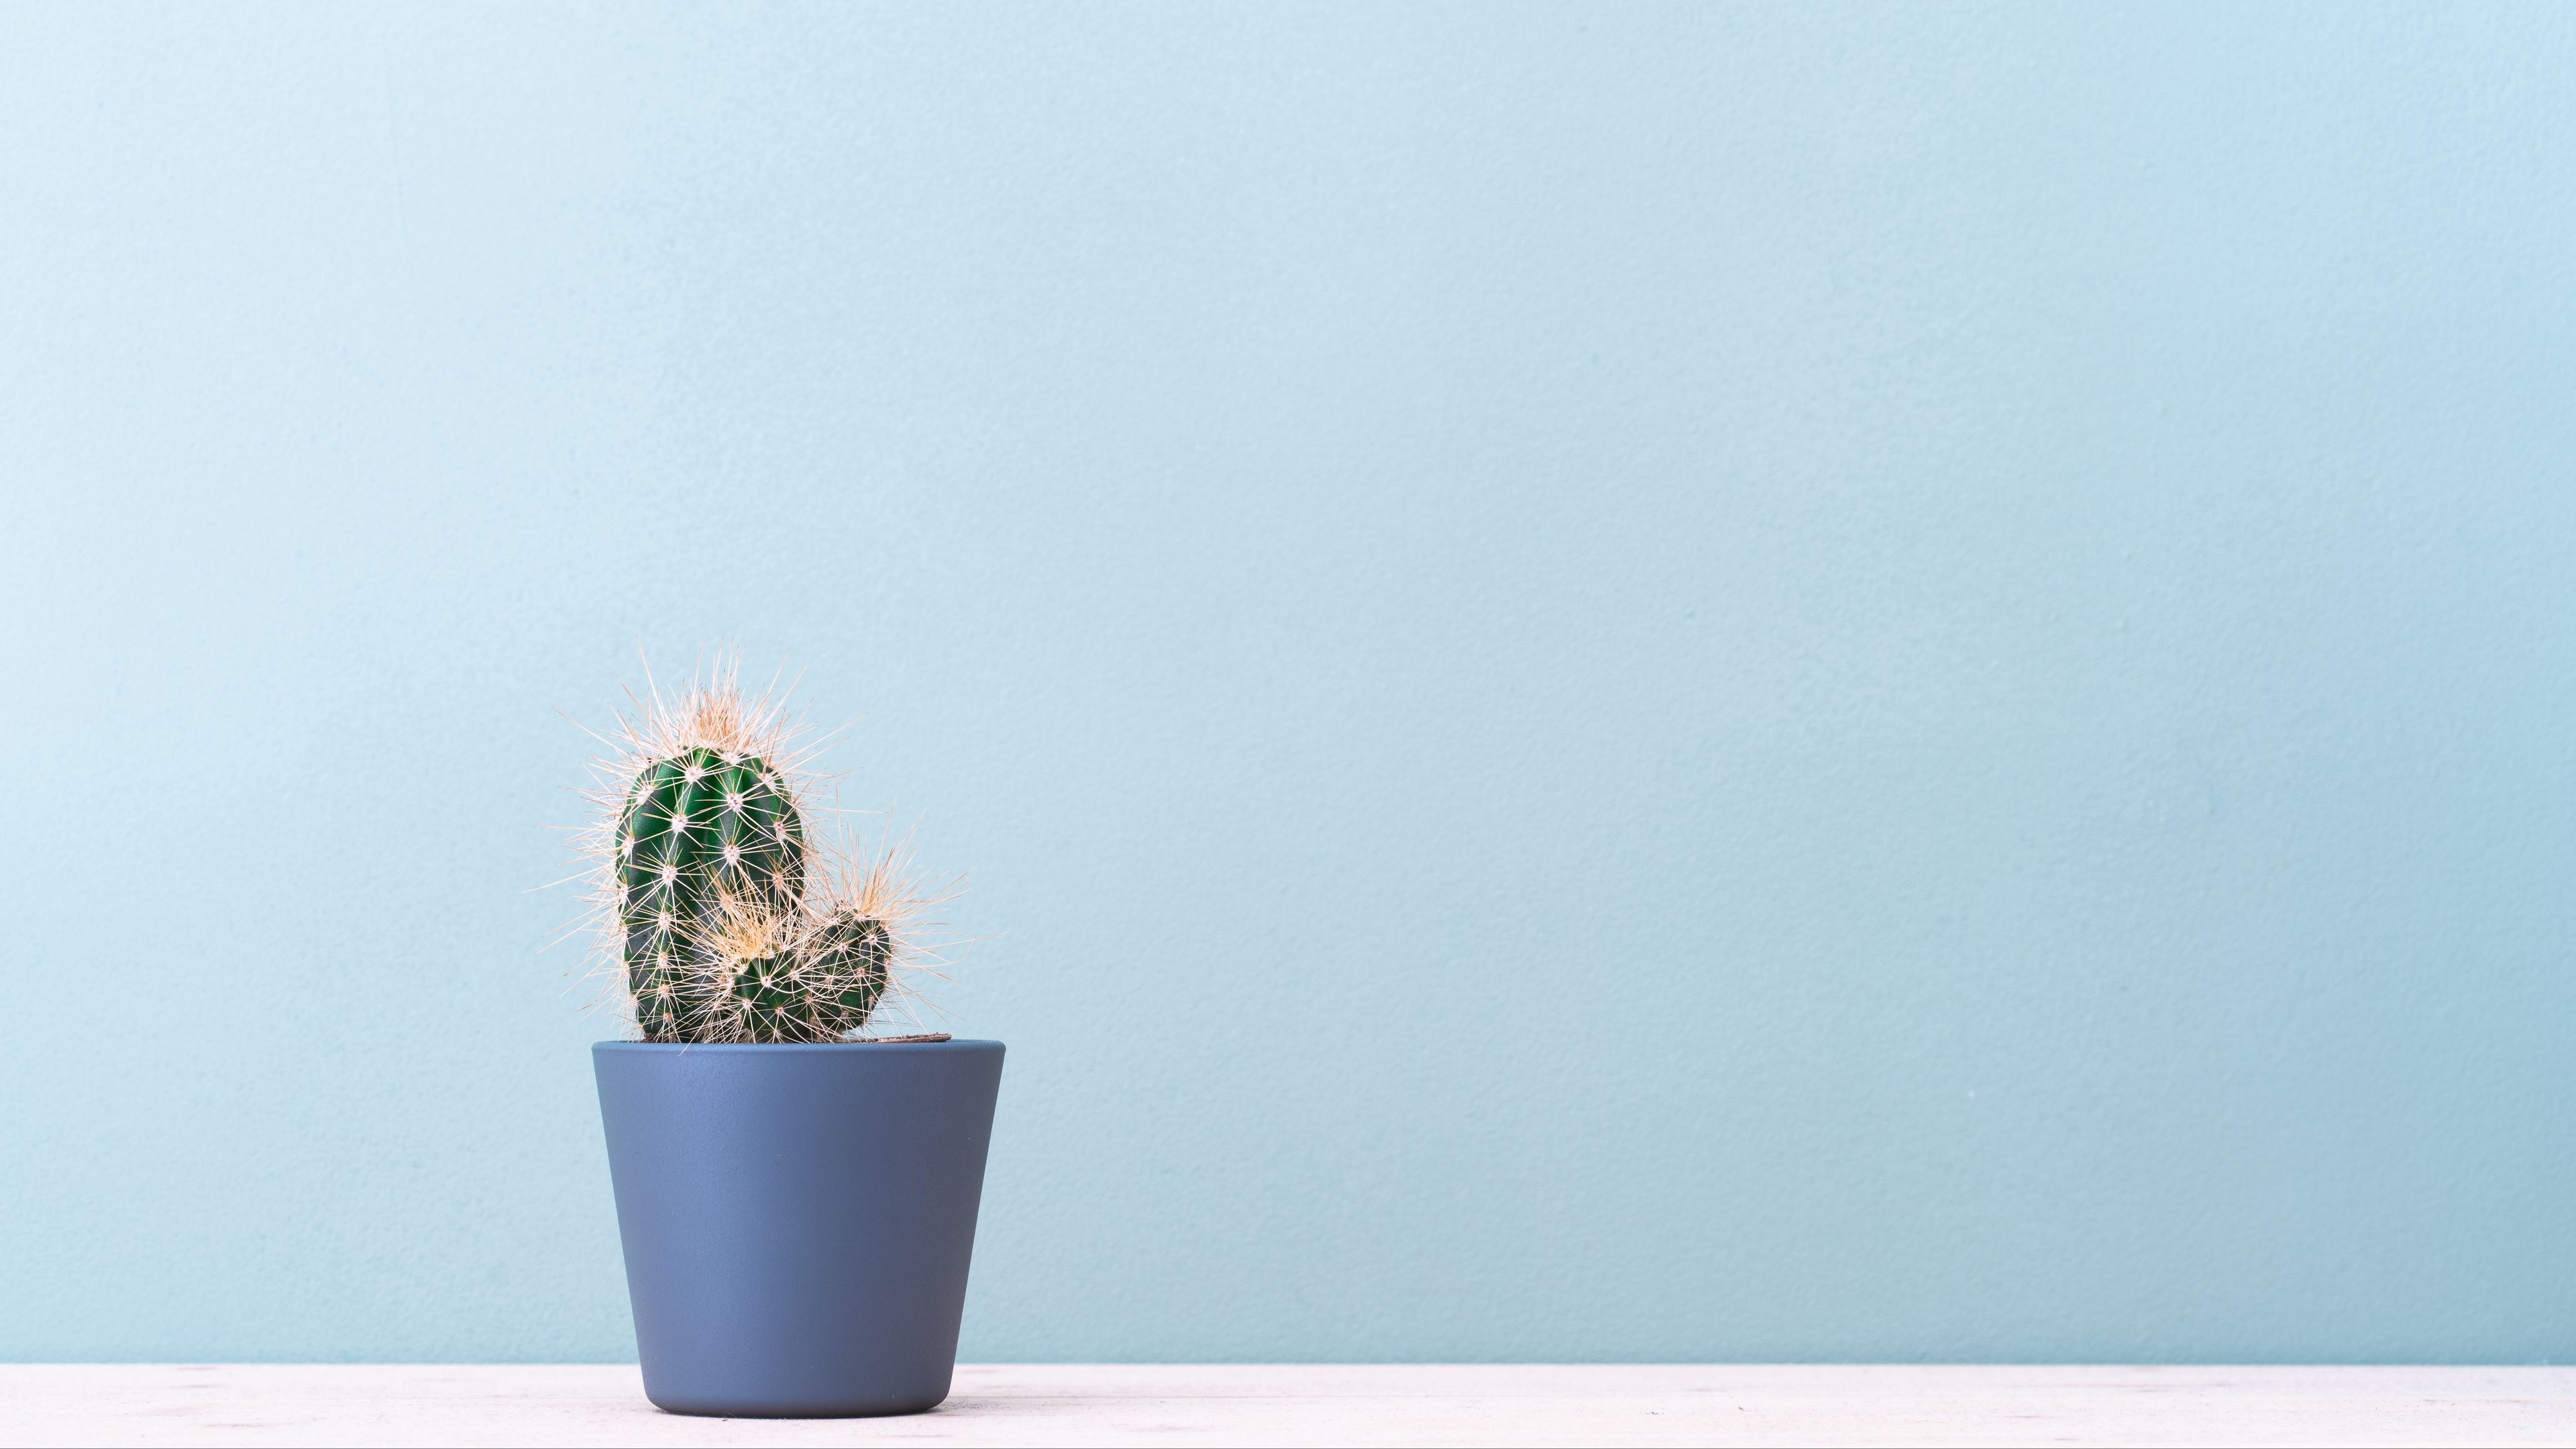 Wallpaper / cactus, plant, minimalism, 4k free download